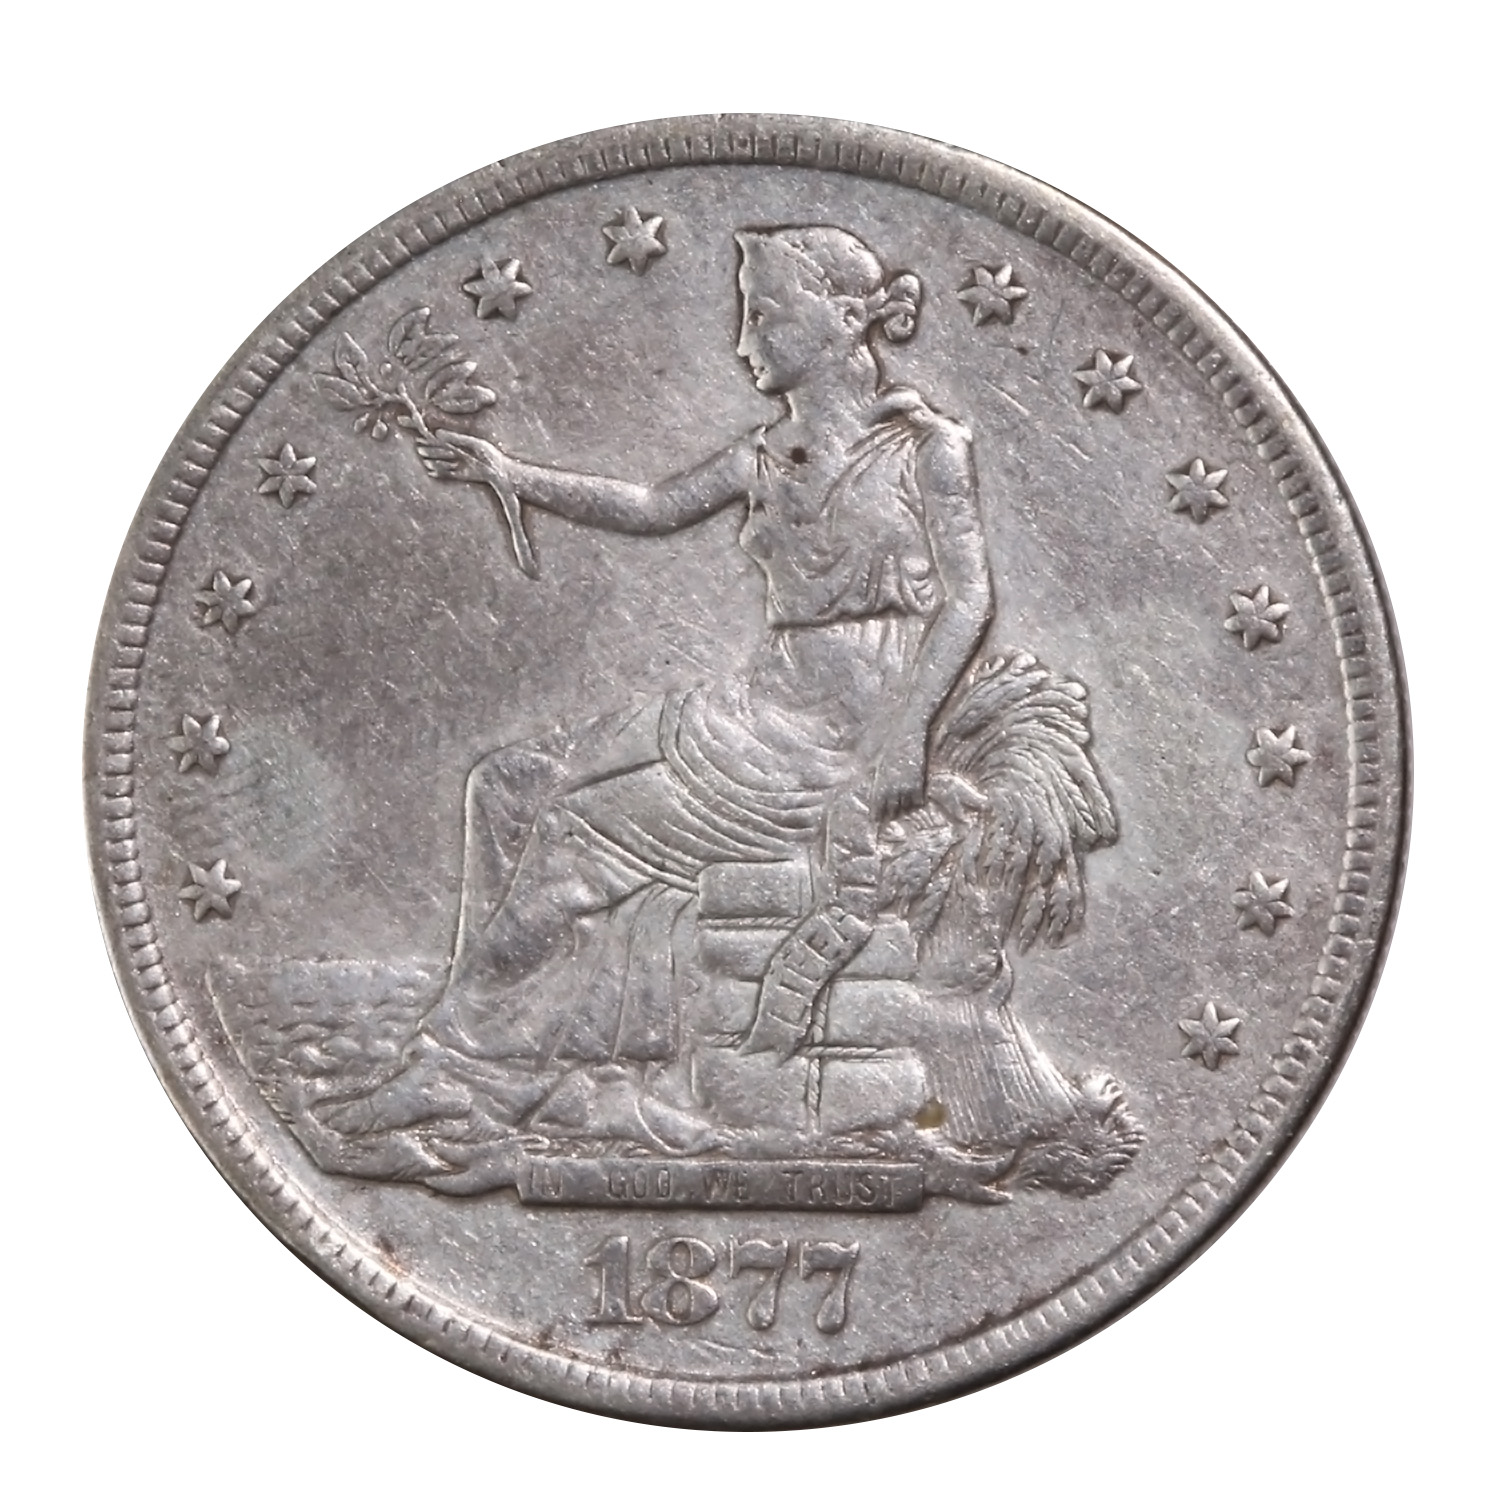 U.S. Trade Dollar 1877-S VF